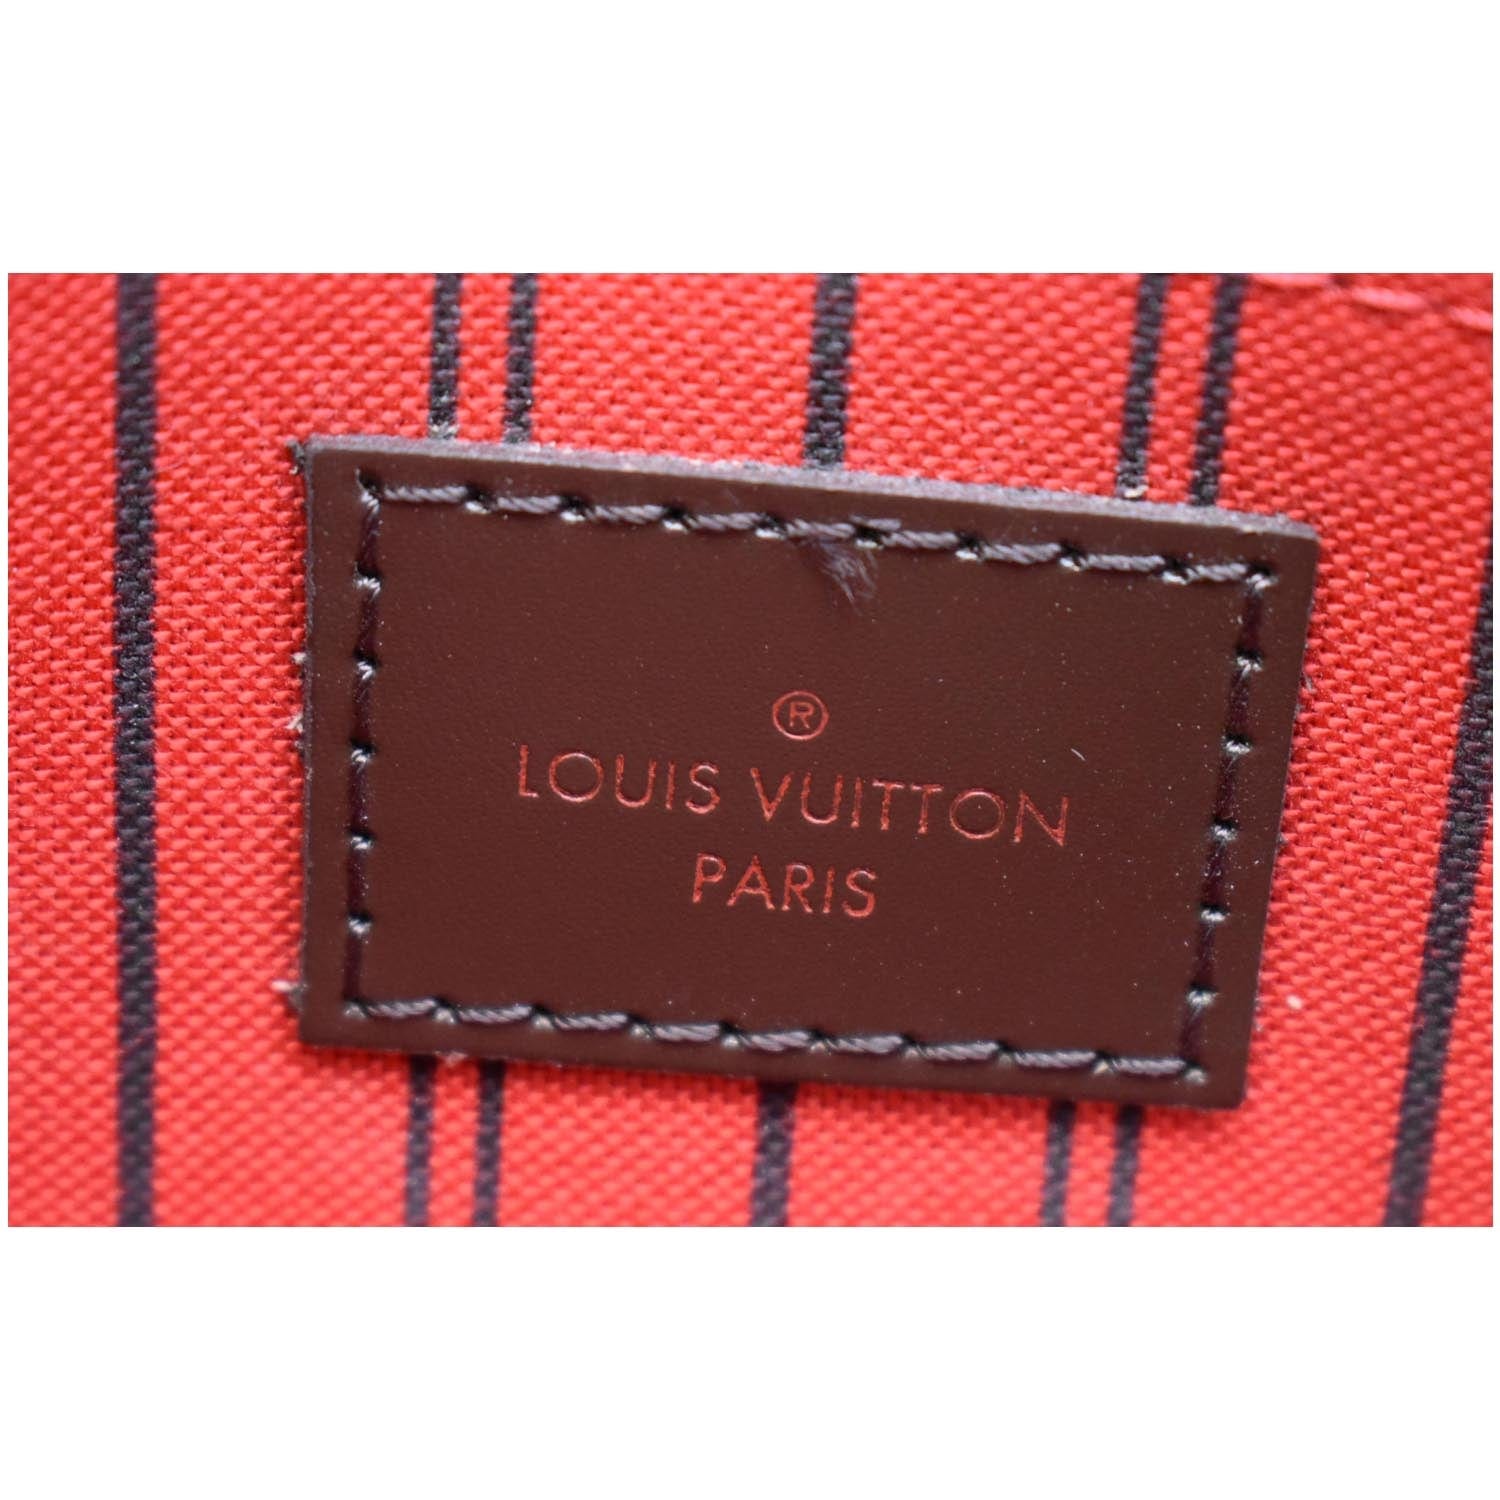 Louis Vuitton Brown Damier Ebene Félicie Pochette Gold Hardware